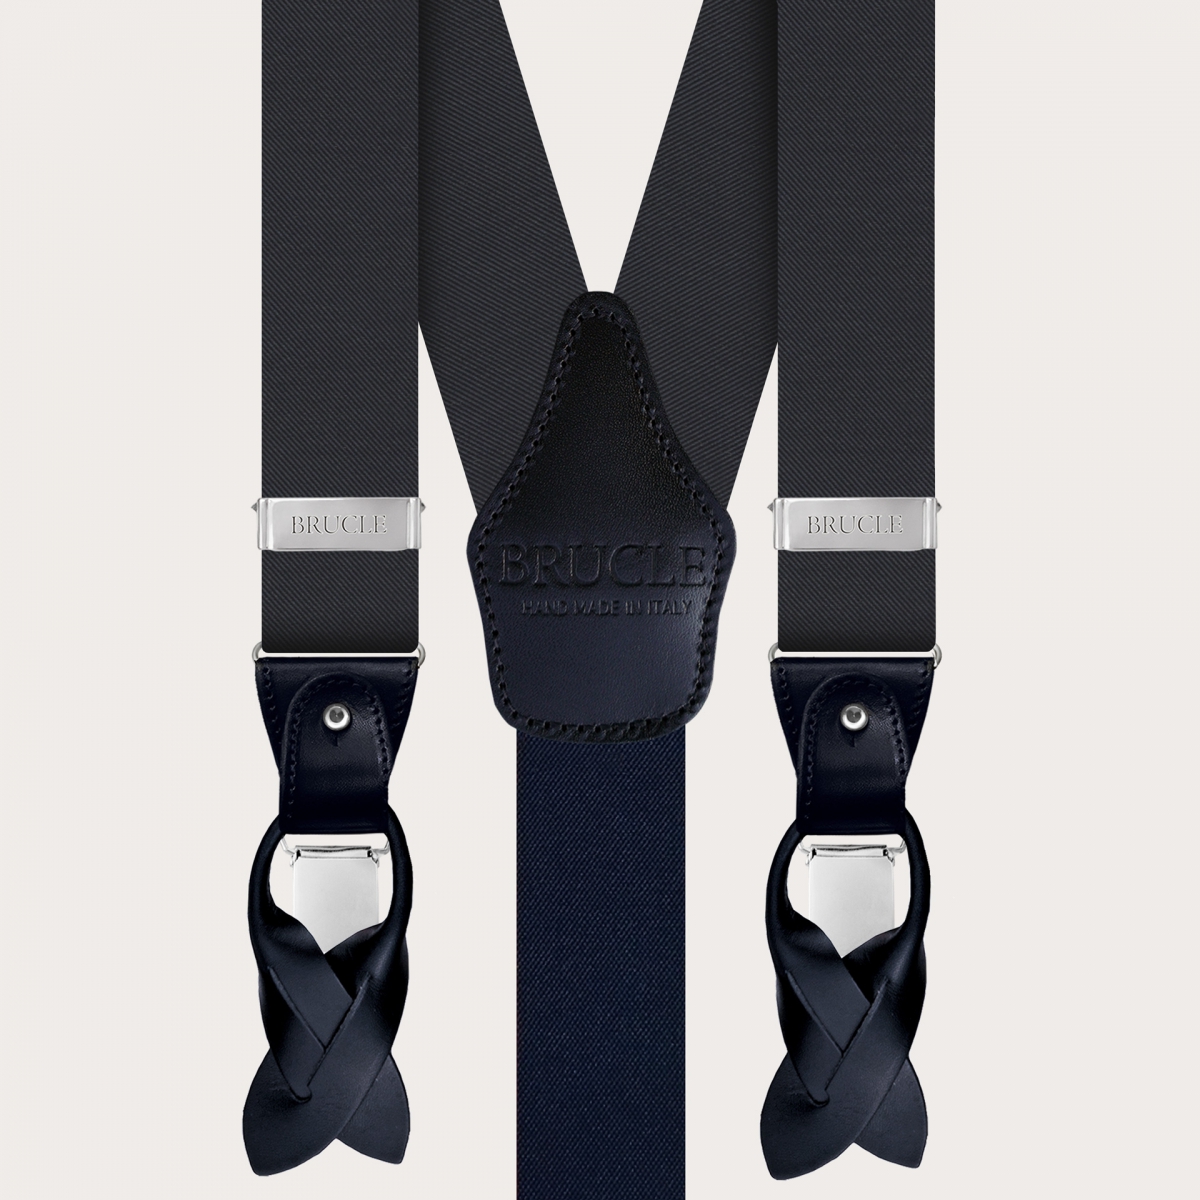 BRUCLE Set of suspenders and bow tie in elegant slate grey silk